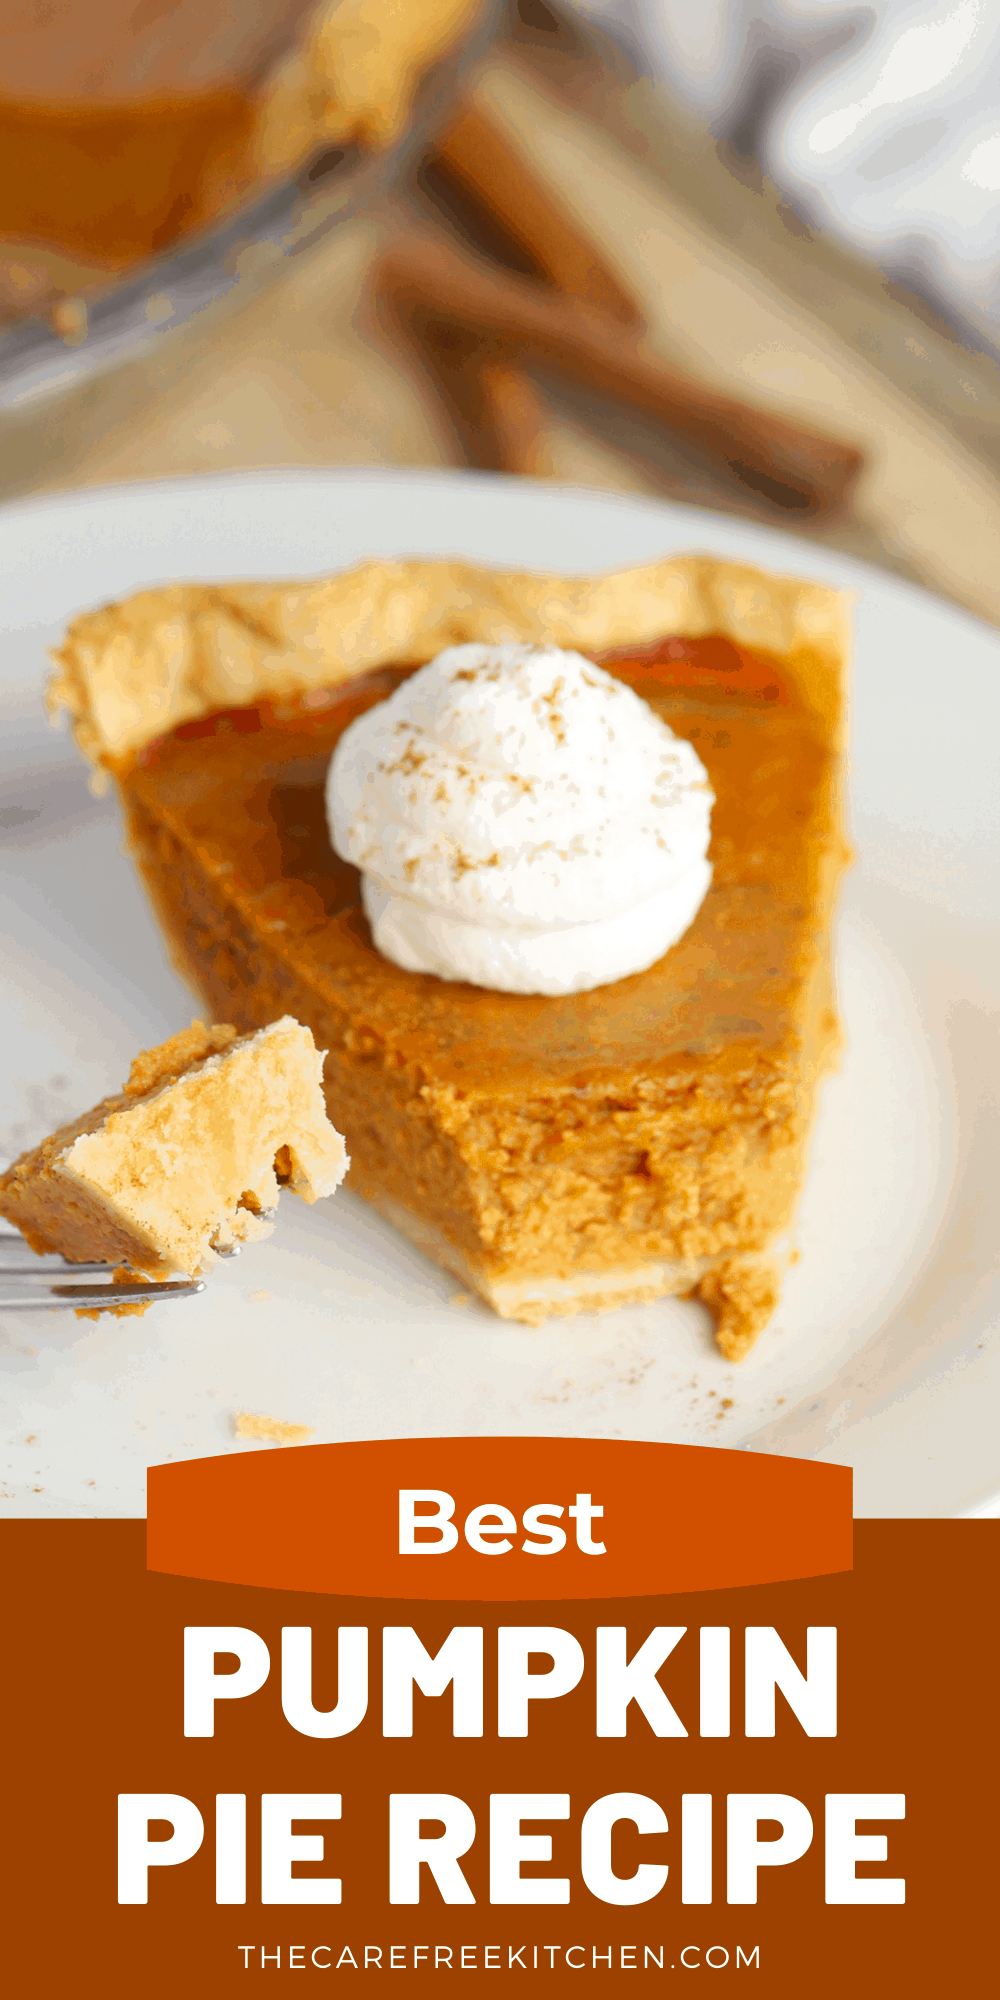 Best Pumpkin Pie Recipe From Scratch - The Carefree Kitchen